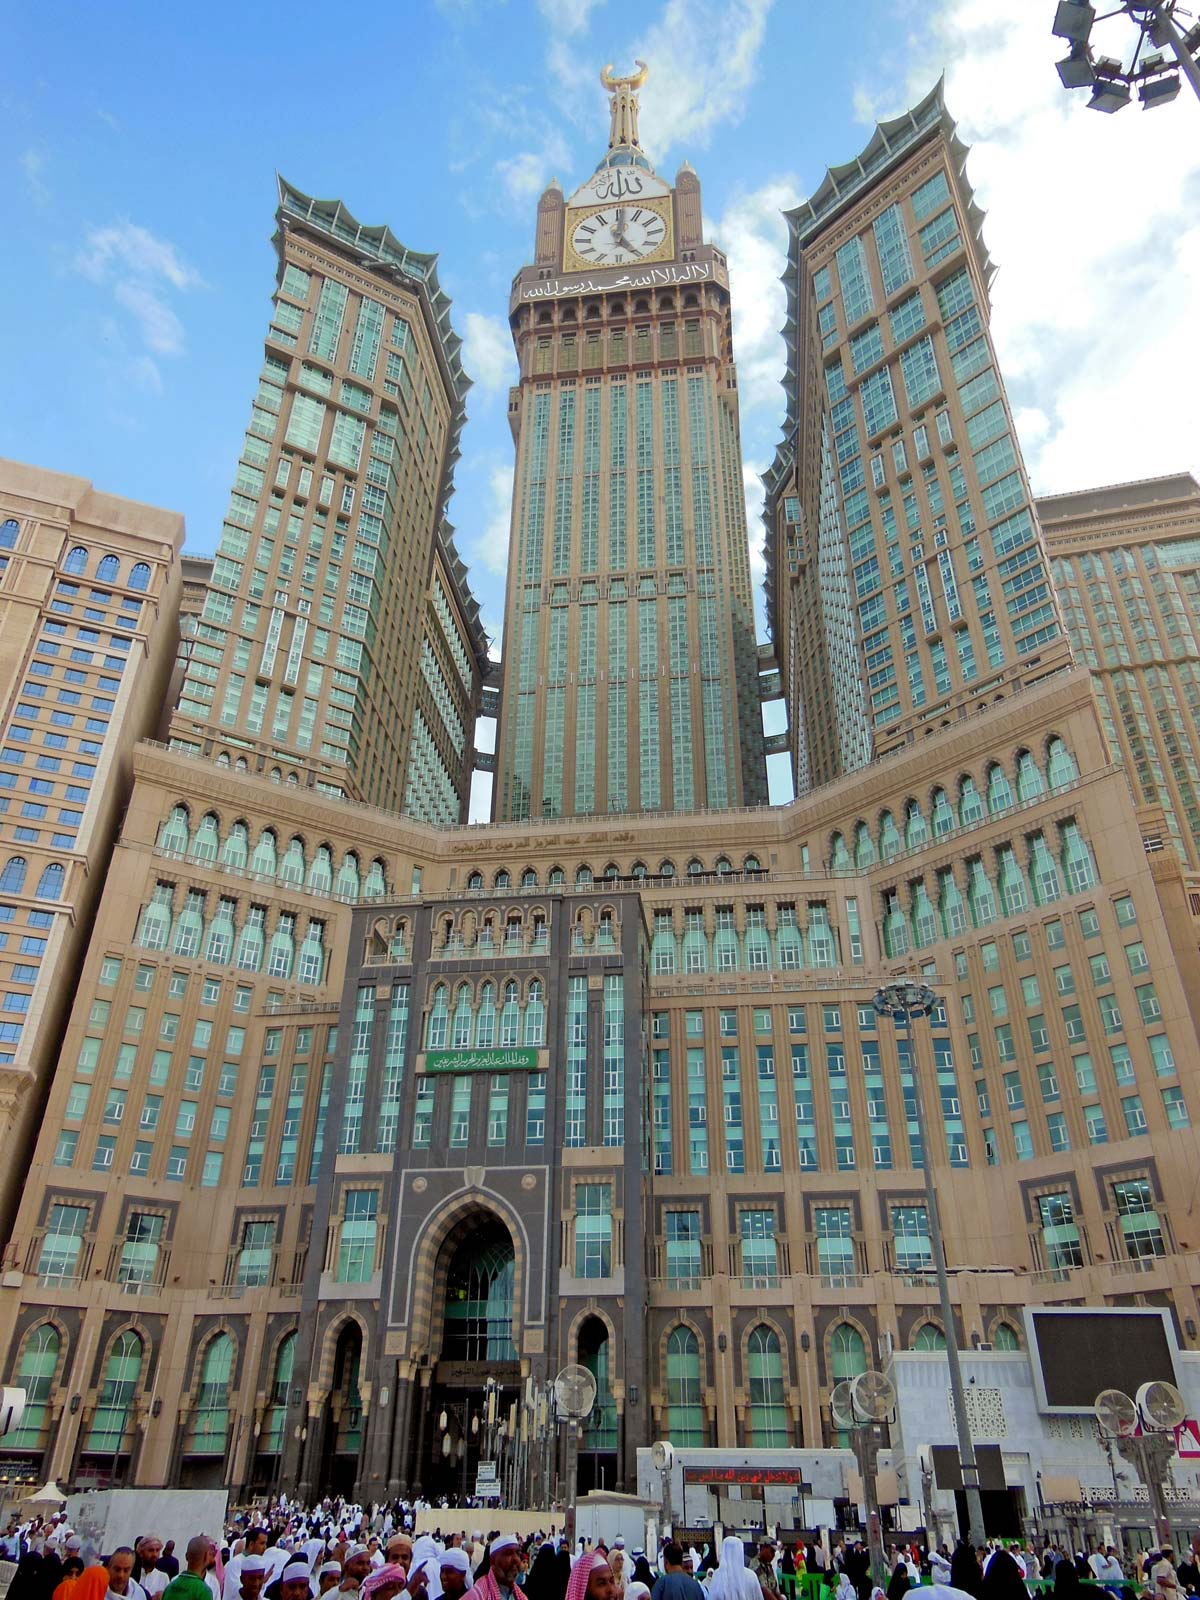 Abrāj Al Bayt. Skyscraper Complex, Mecca, Saudi Arabia